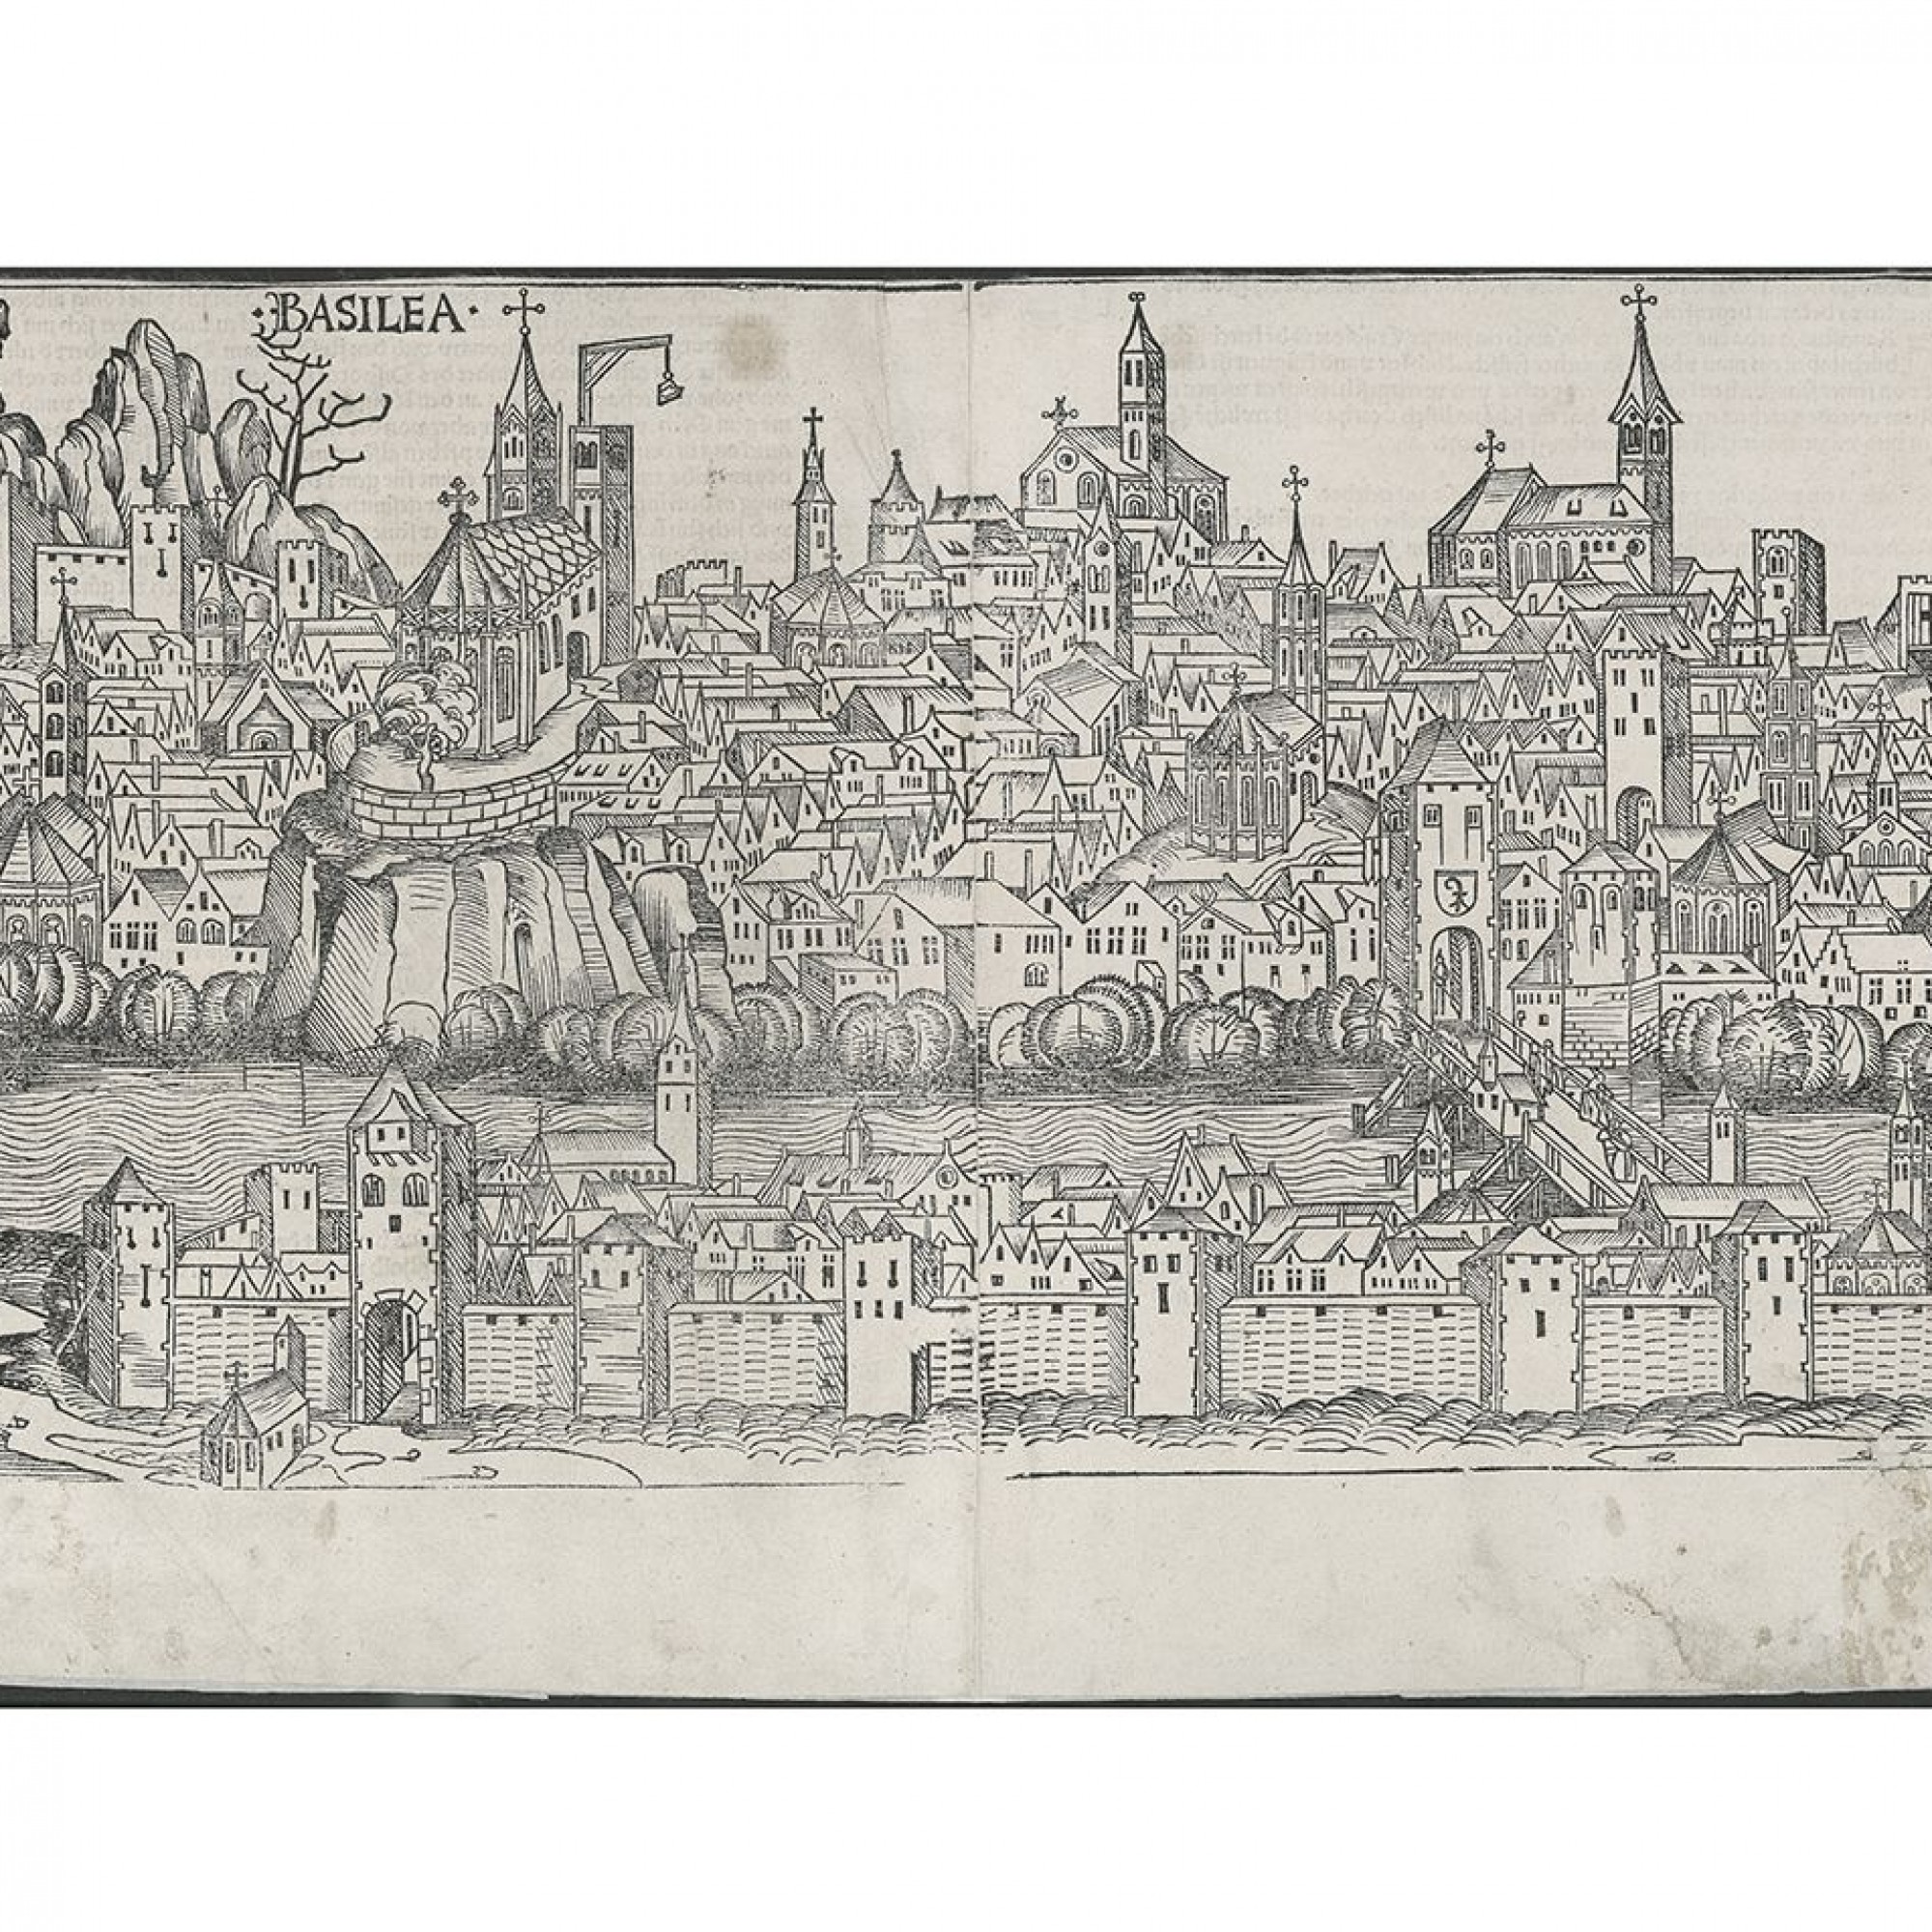 Das Basler Münster mit Lastkran in der Schedel’schen Weltchronik von 1493. Die Abbildung zeigt das Münster kurz vor seiner Vollendung. Allerdings wurde, anders als dargestellt, der Georgsturm vor dem Martinsturm fertiggestellt.